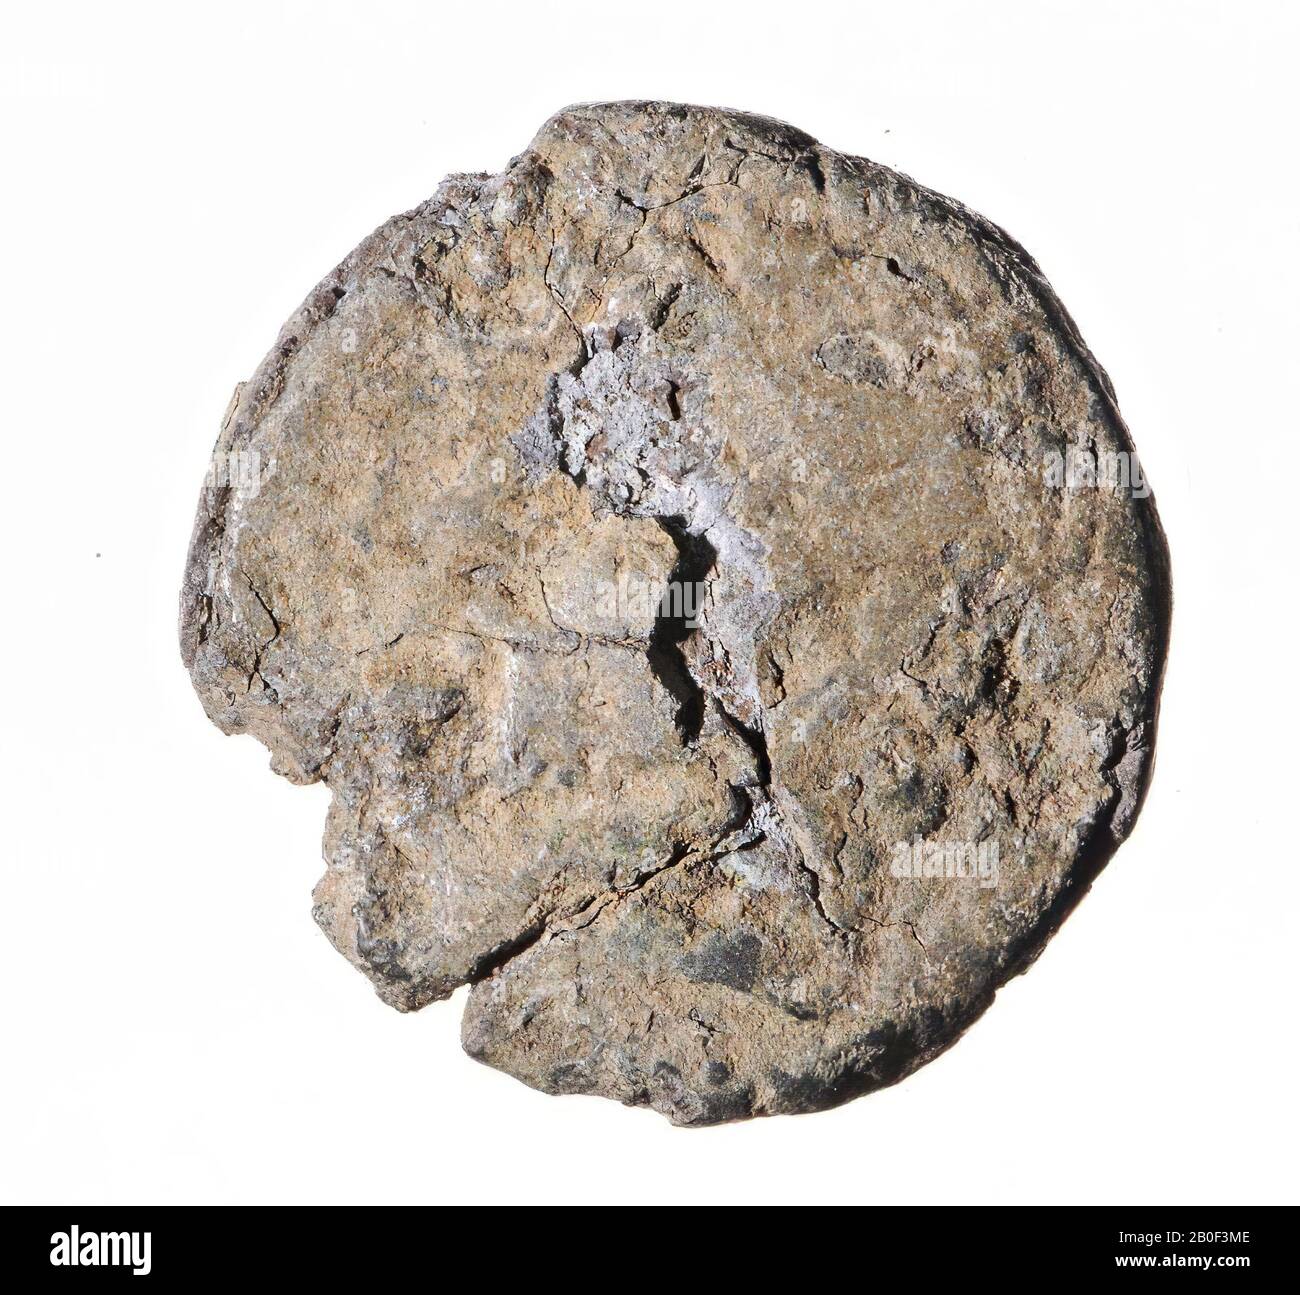 Classical antiquity, coin, AES-25, Massinissa et al., Numidia-Mauretania, metal, copper, Diam., 25 mm, wt., 14.36 gr, roman 208-108 BC, Tunisia Stock Photo